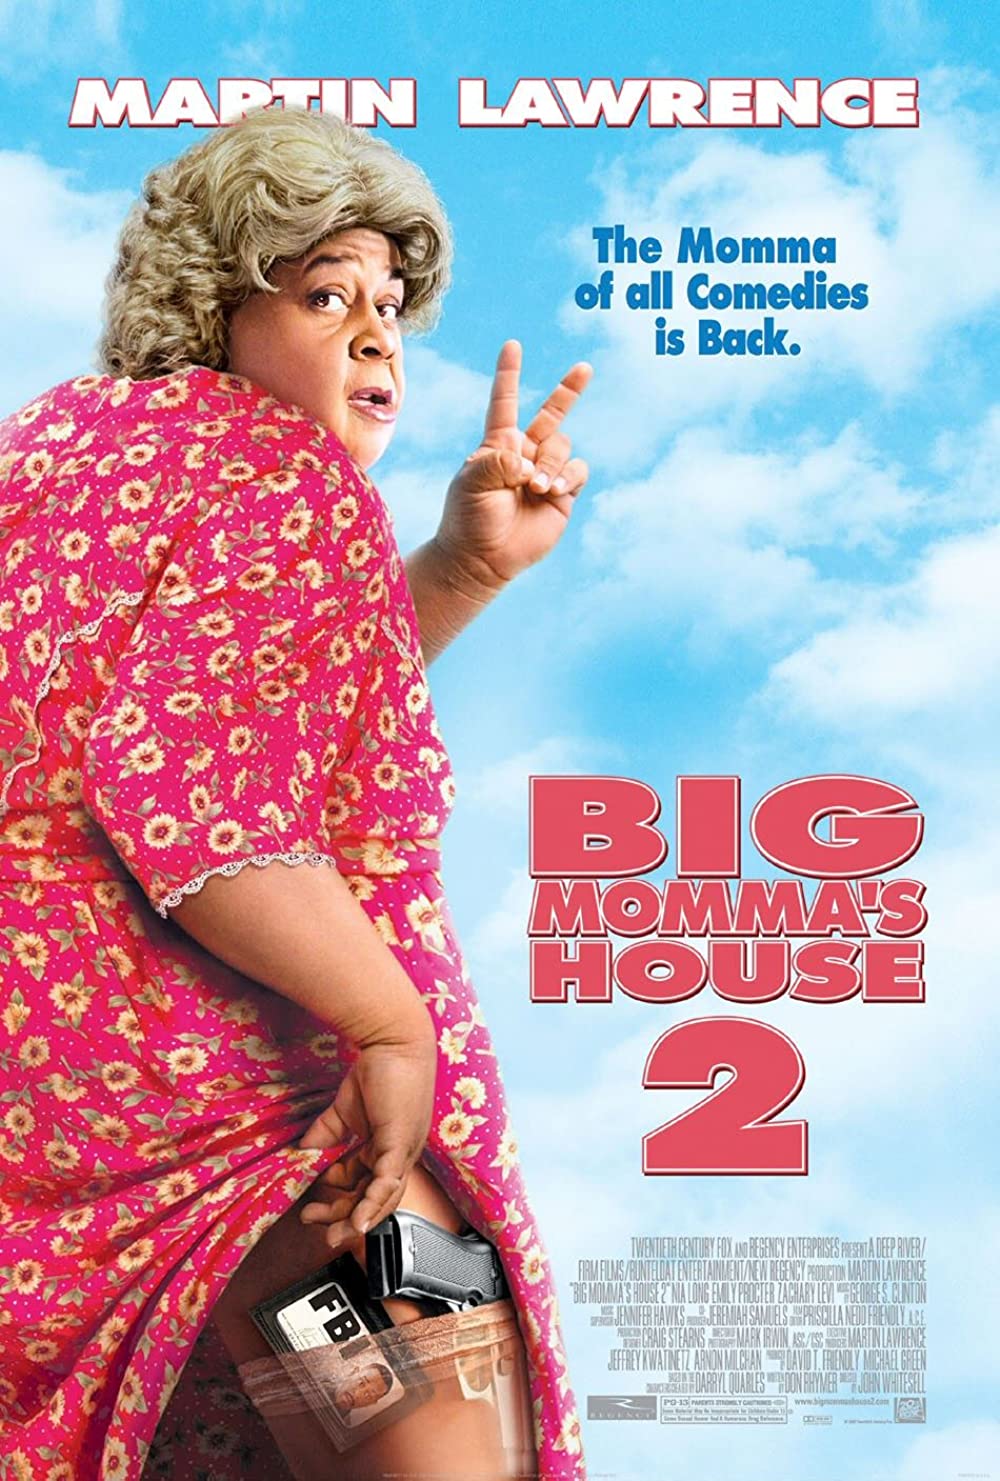 Filmbeschreibung zu Big Mommas House 2